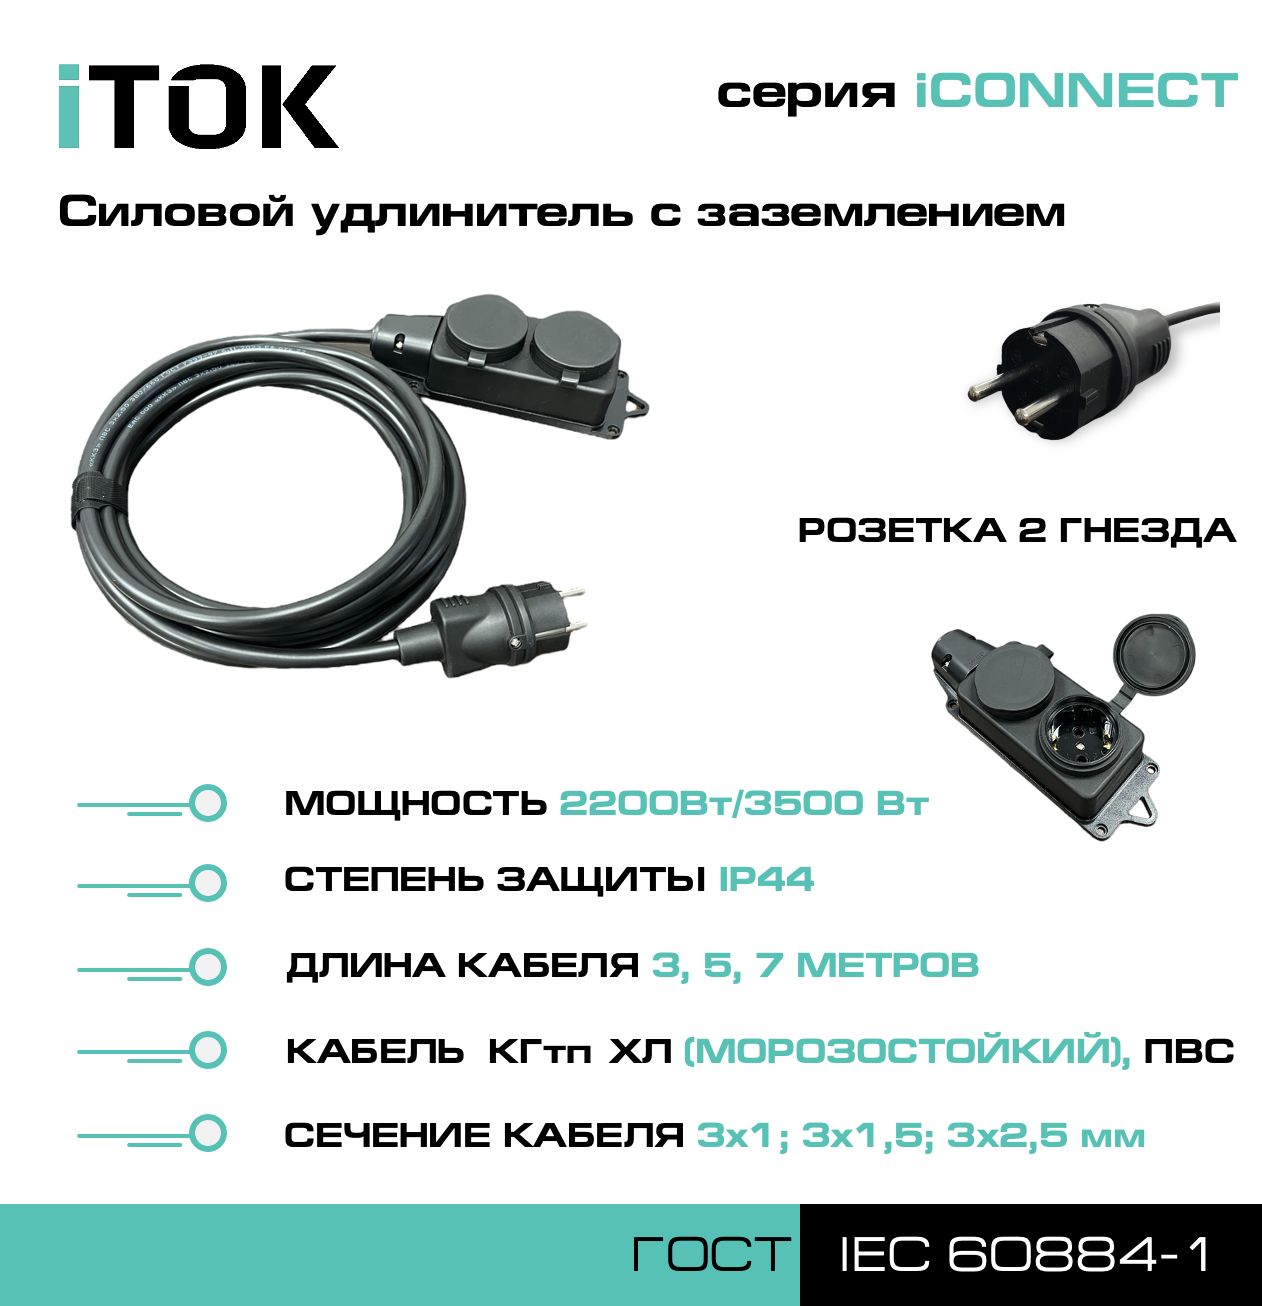 Удлинитель с заземлением серии iTOK iCONNECT КГтп-ХЛ 3х1,5 мм 2 гнезда IP44 5 м